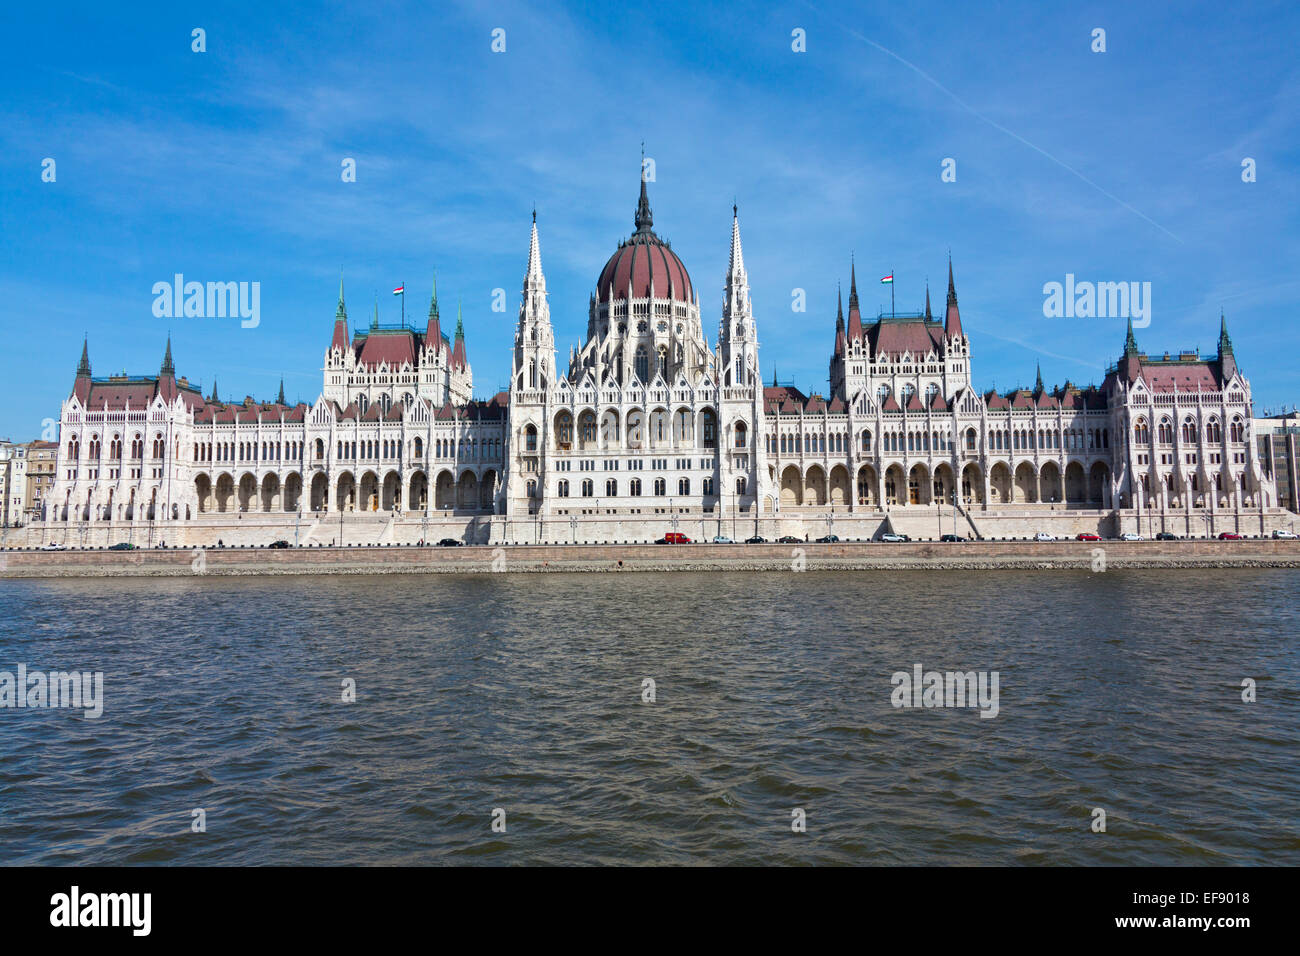 Parlamentsgebäude von Budaseite von Budapest, sonnigen Tag, blauer Himmel, über Donau. Ungarn Stockfoto